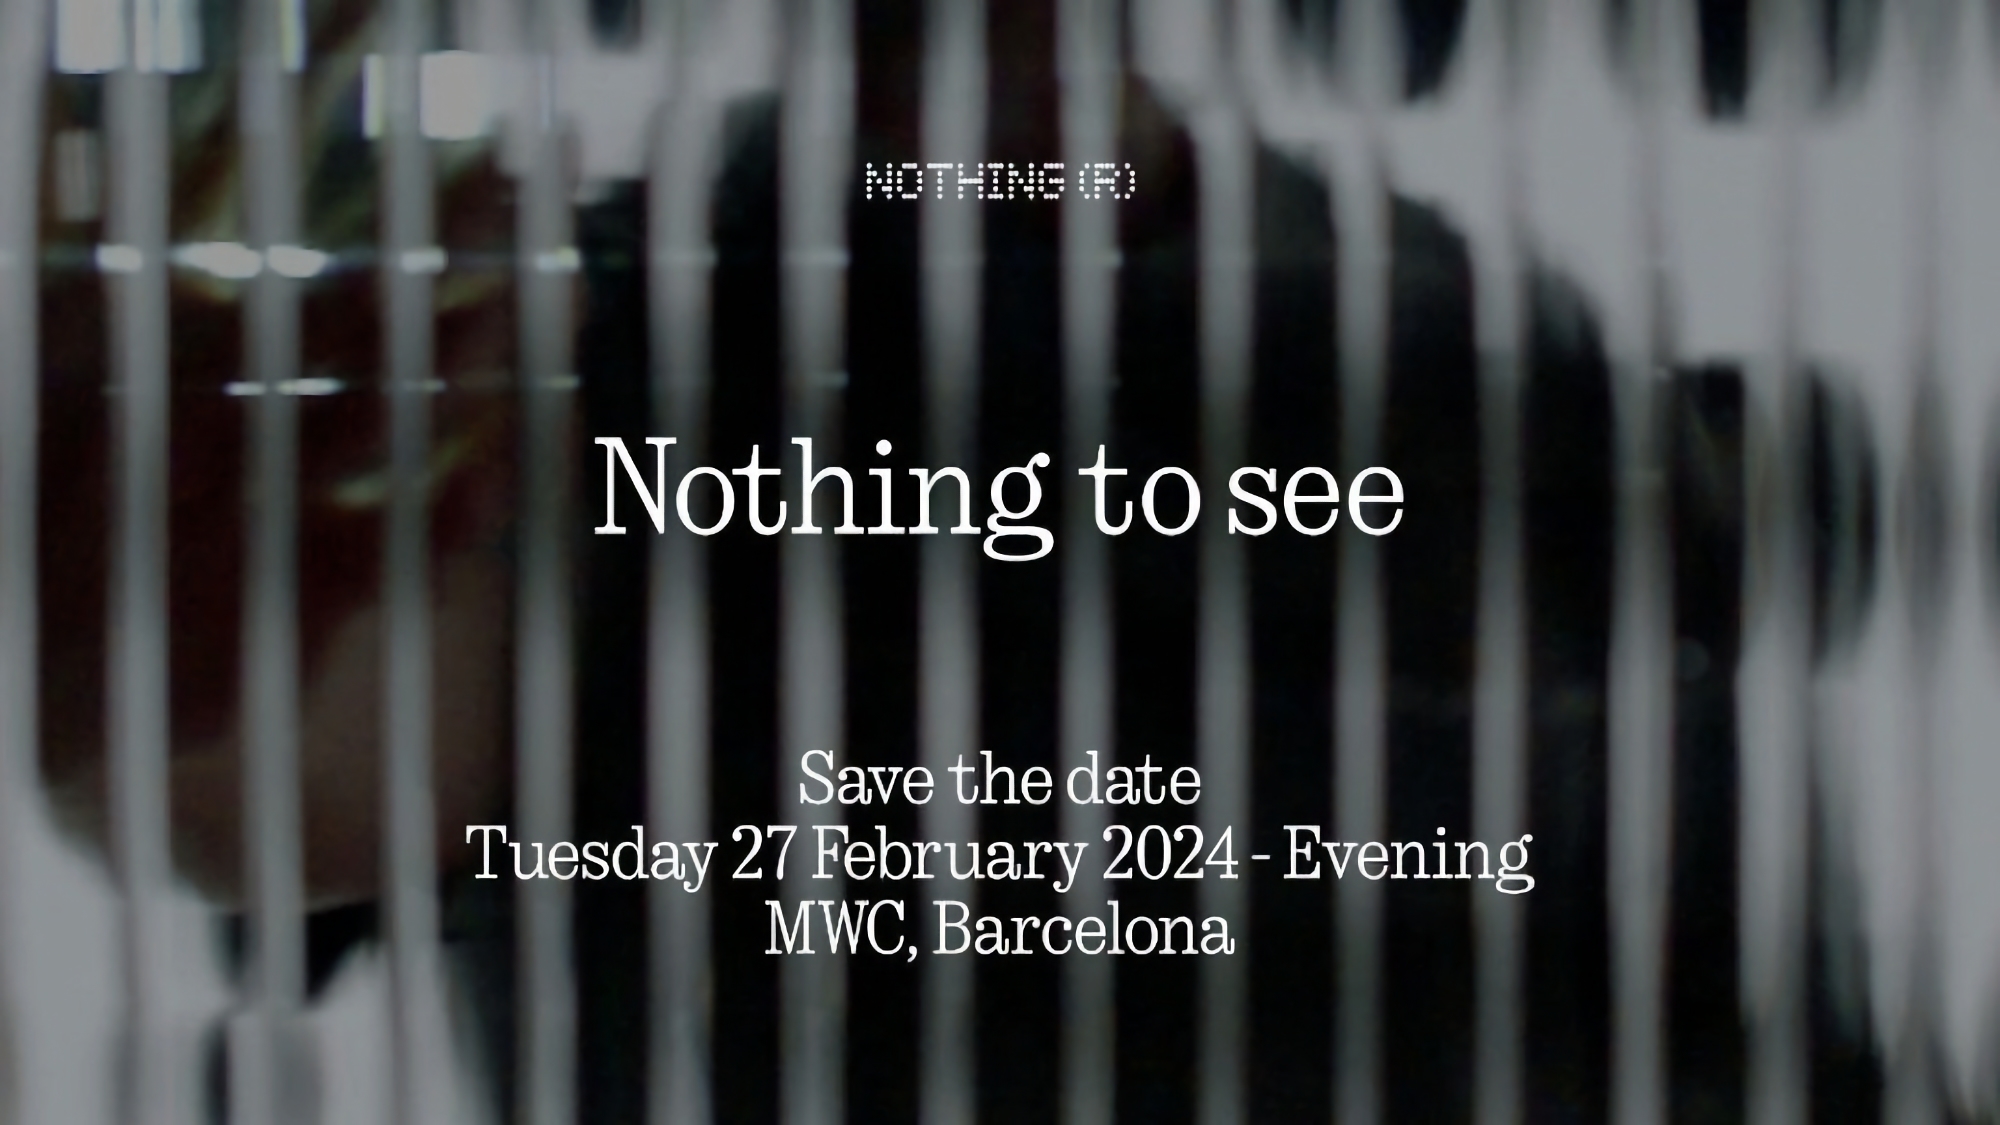 Firma Nothing przeprowadzi prezentację 27 lutego w ramach MWC 2024